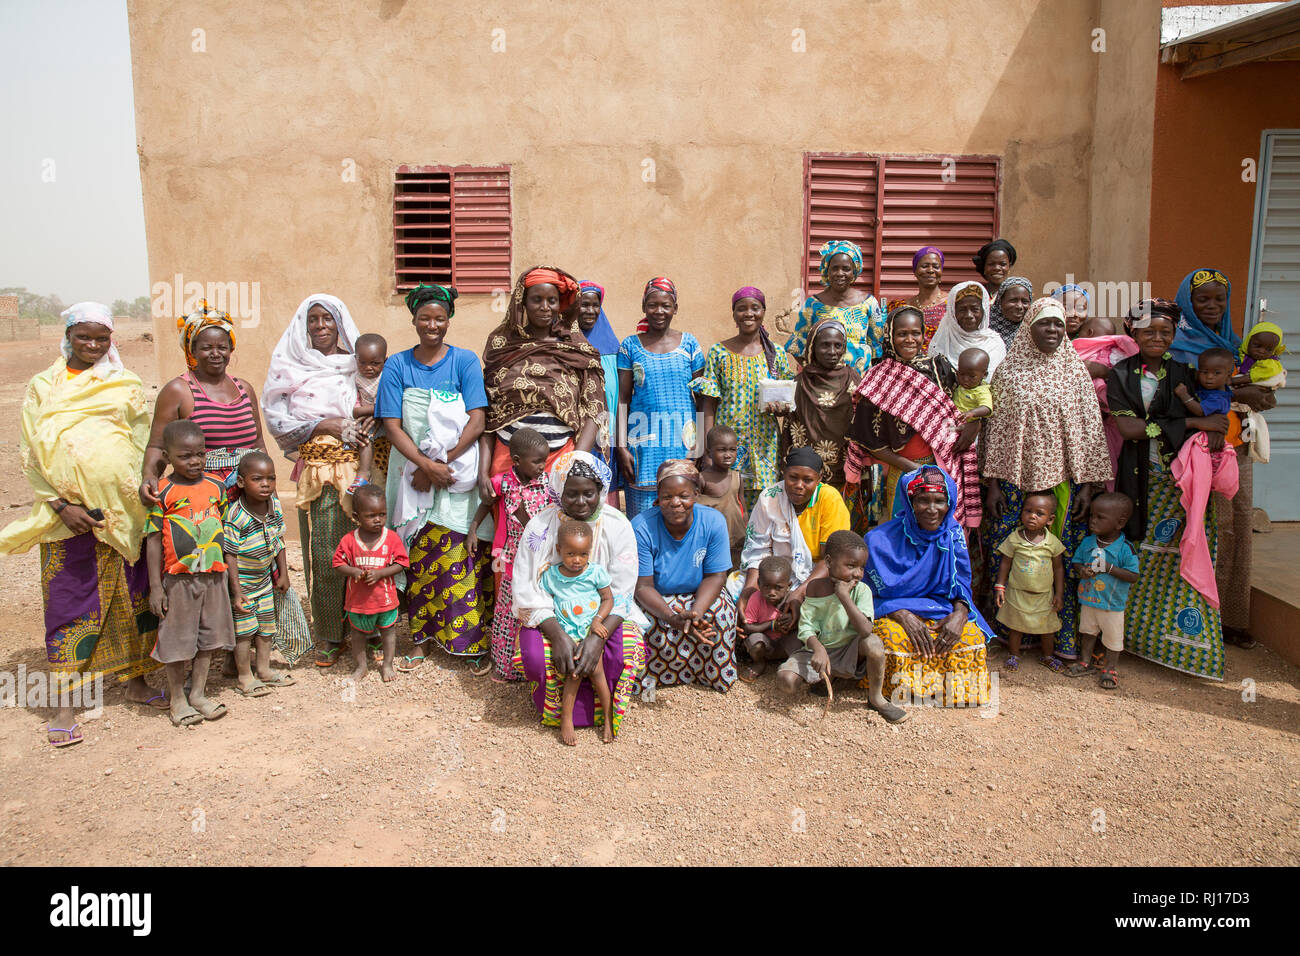 La-toden Dorf, yako Provinz, Burkina Faso. Von den Frauen, die einen nahrhaften Brei Mehl mix Zutaten gehören cowpeas, Erdnüsse, Zucker, Soja, iodene Salz, Mineralstoffe und Vitamine, die Sie herstellen und verkaufen, wenn es eine Nachfrage. Stockfoto